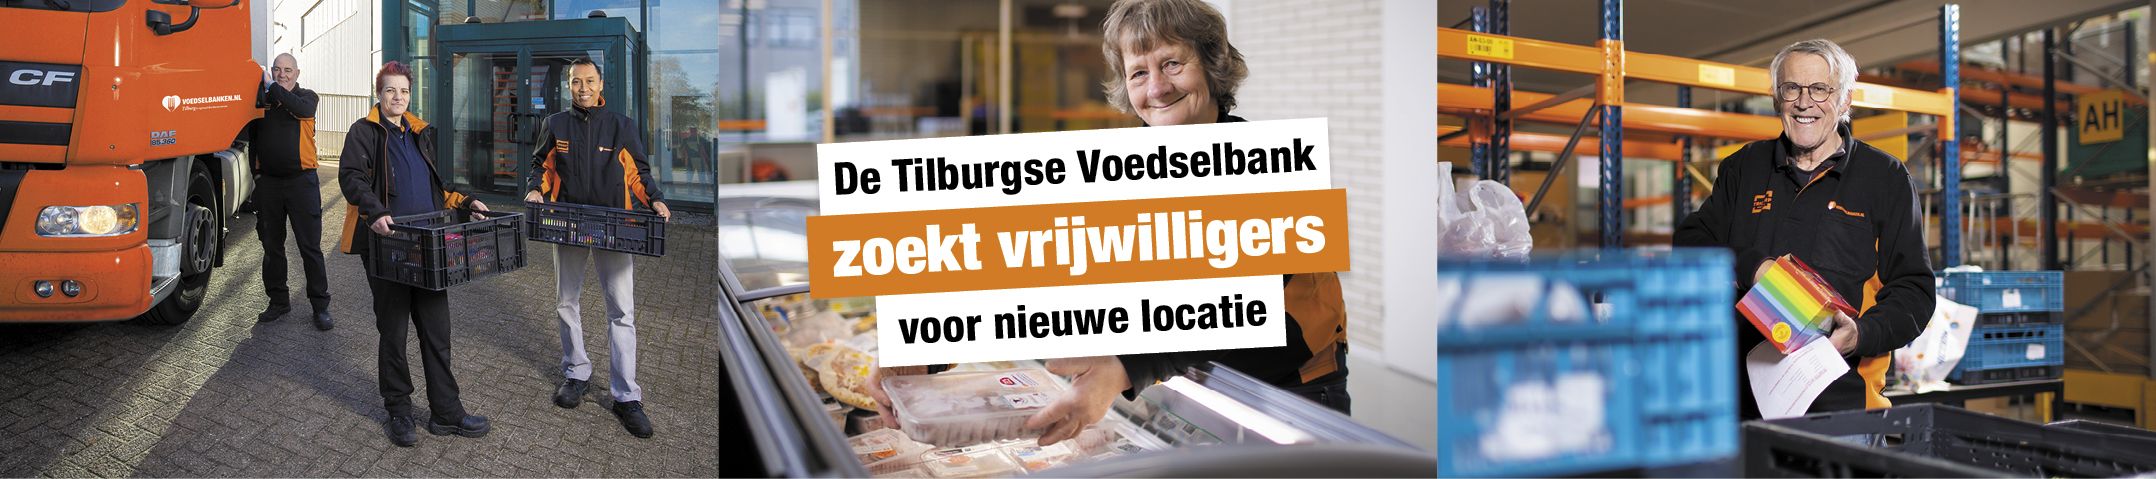 Vacatures De Tilburgse Voedselbank